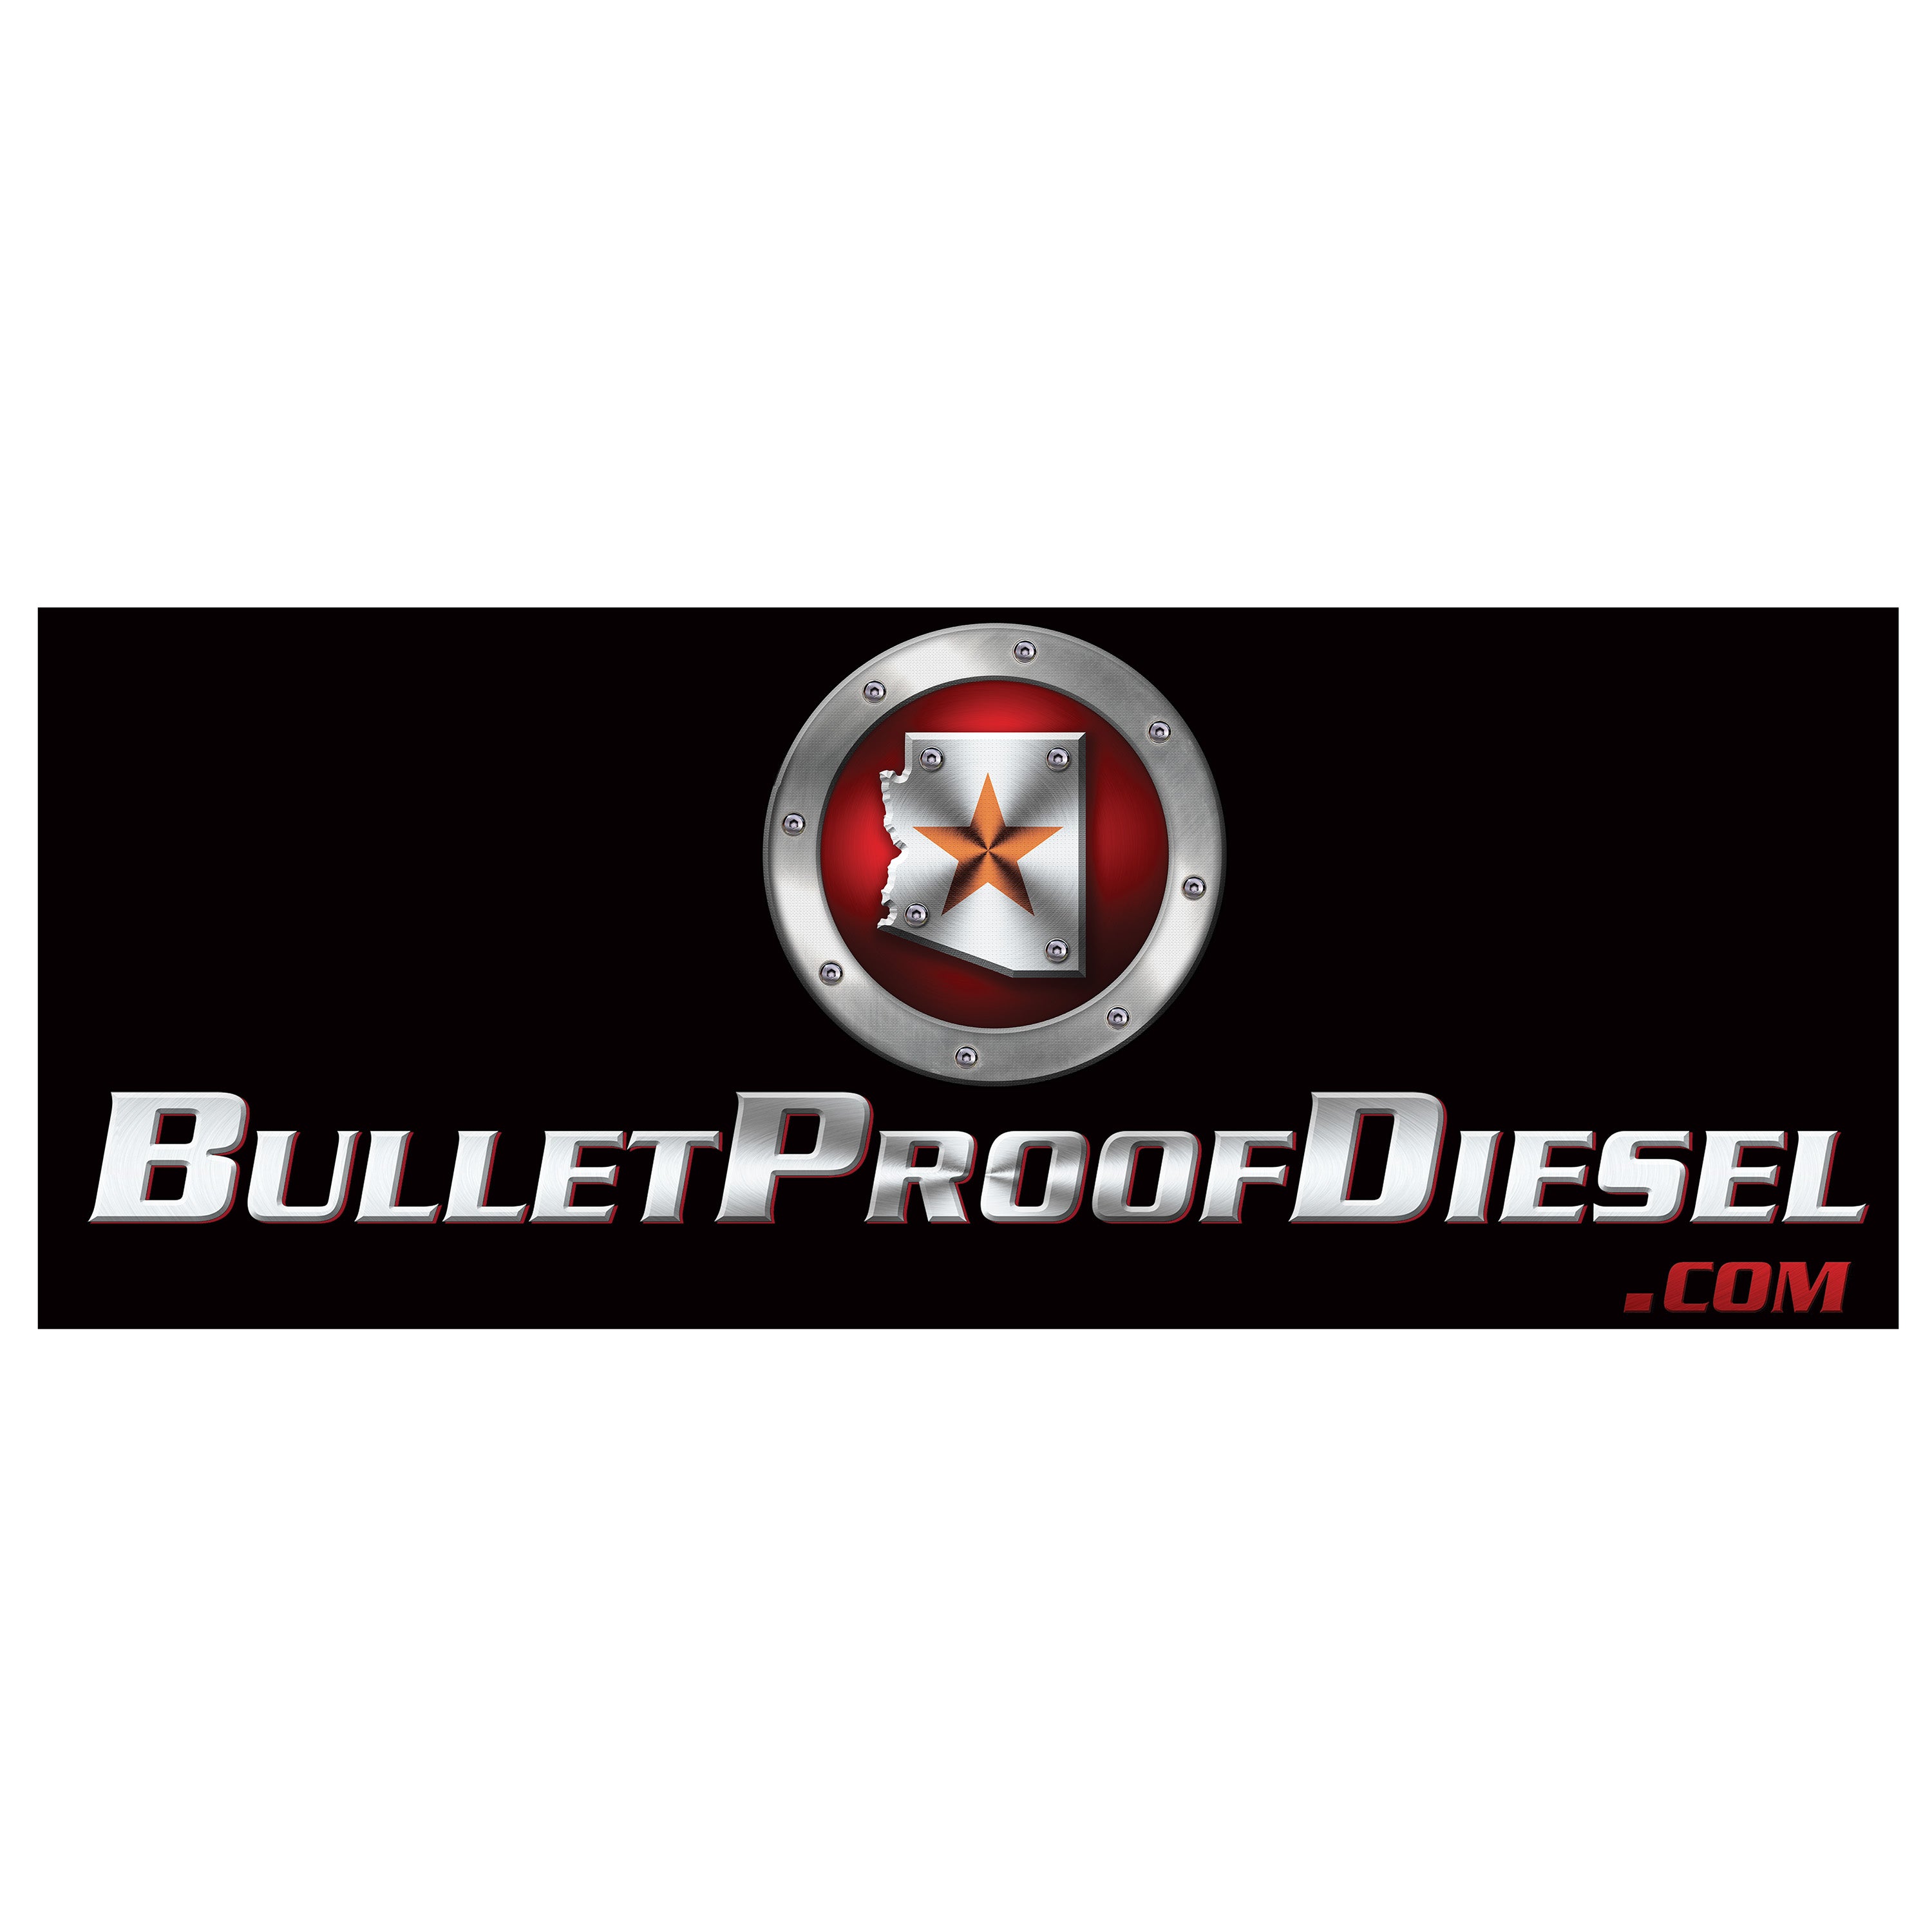 Bullet Proof Diesel Promotional Banner - Bullet Proof Diesel Logo - 24" X 60"